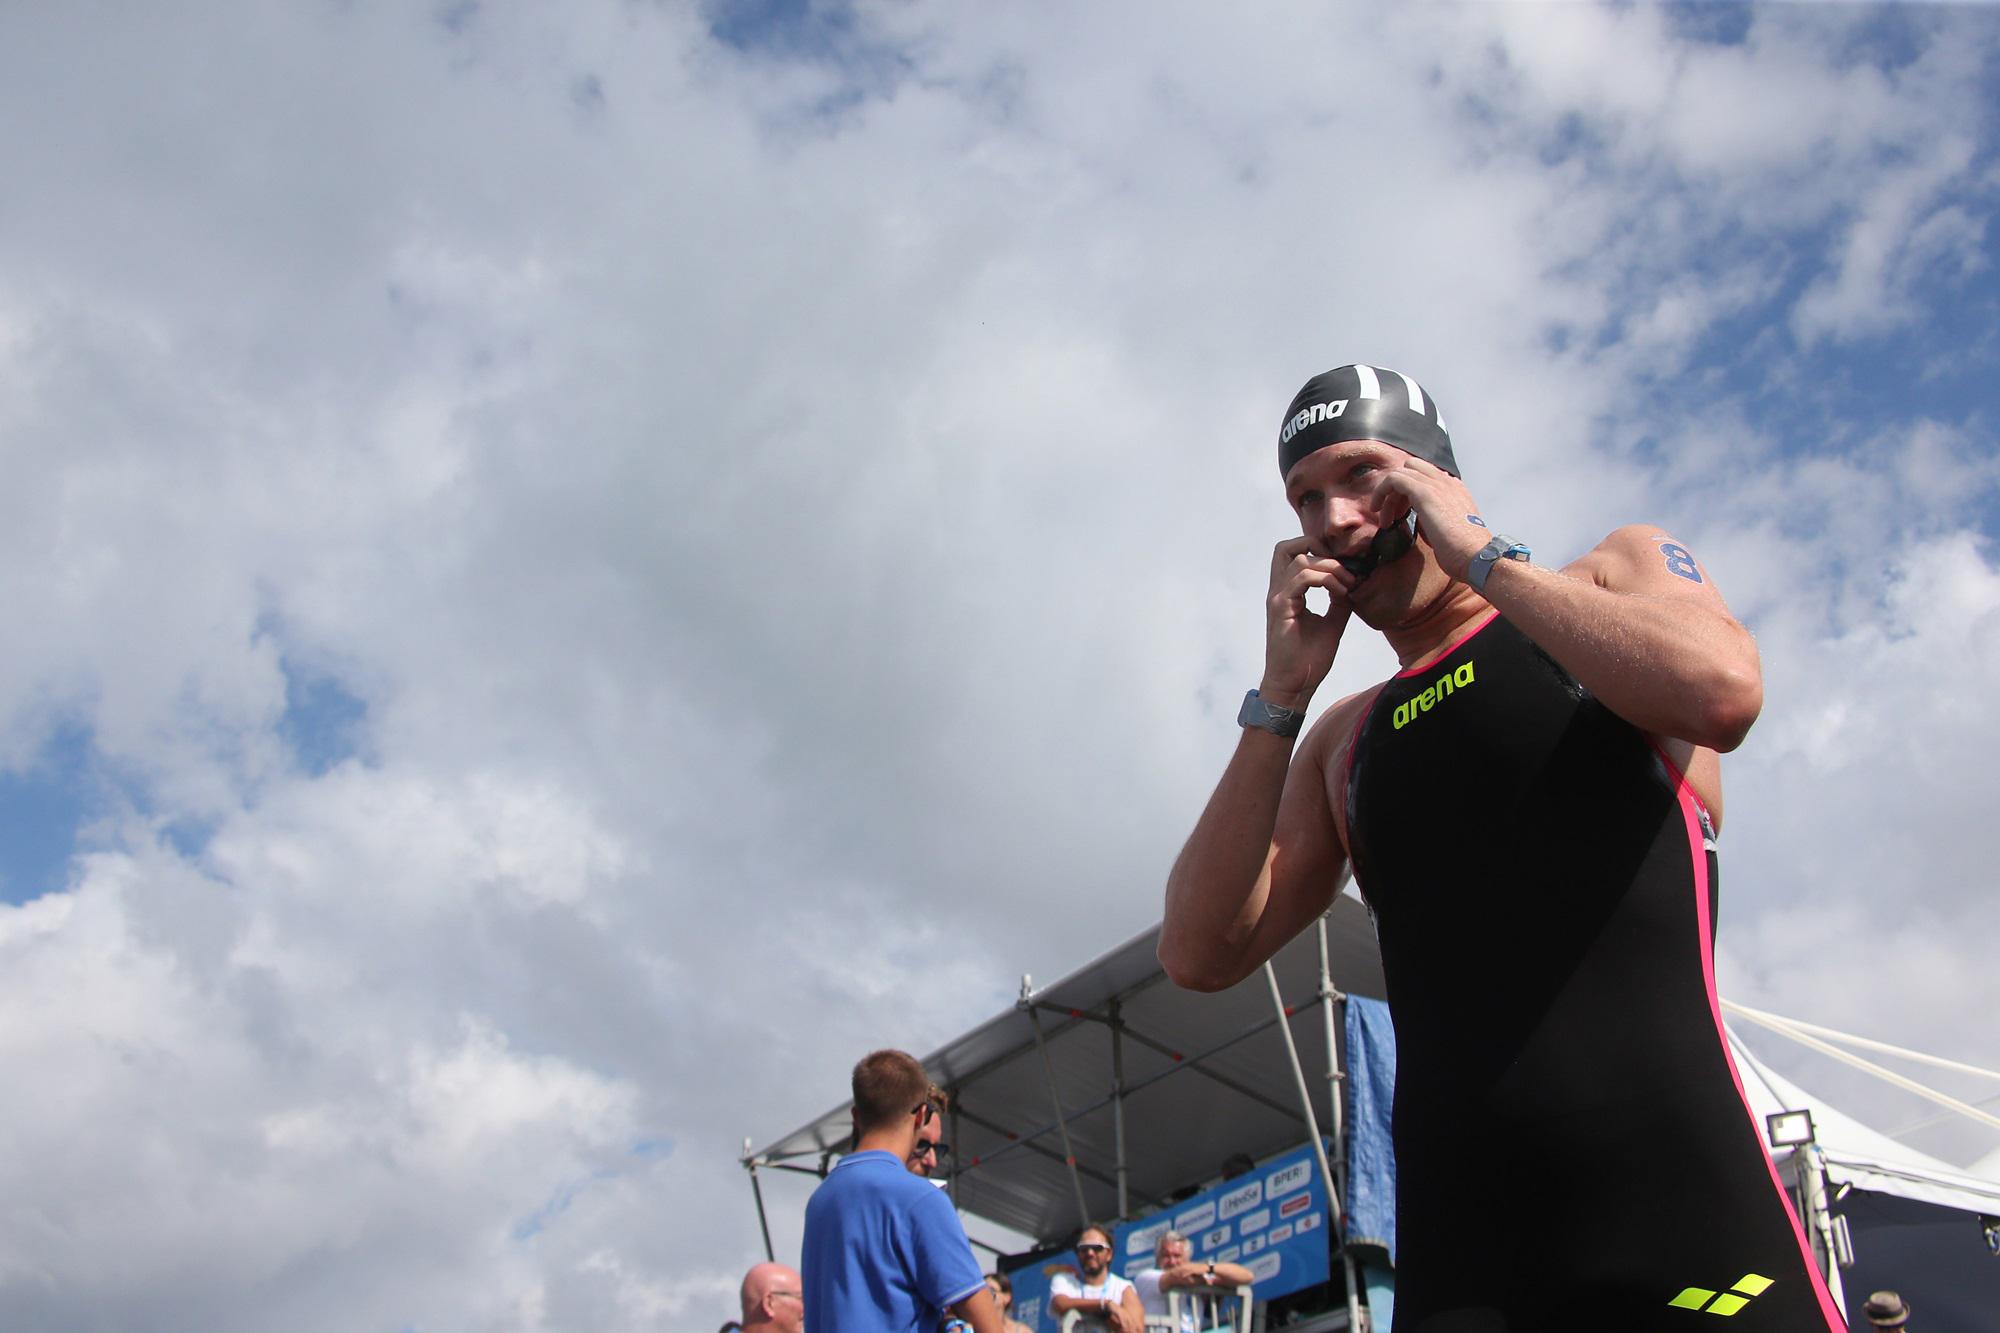 Europei nuoto - fondo: Guidi bronzo nella 5 km maschile